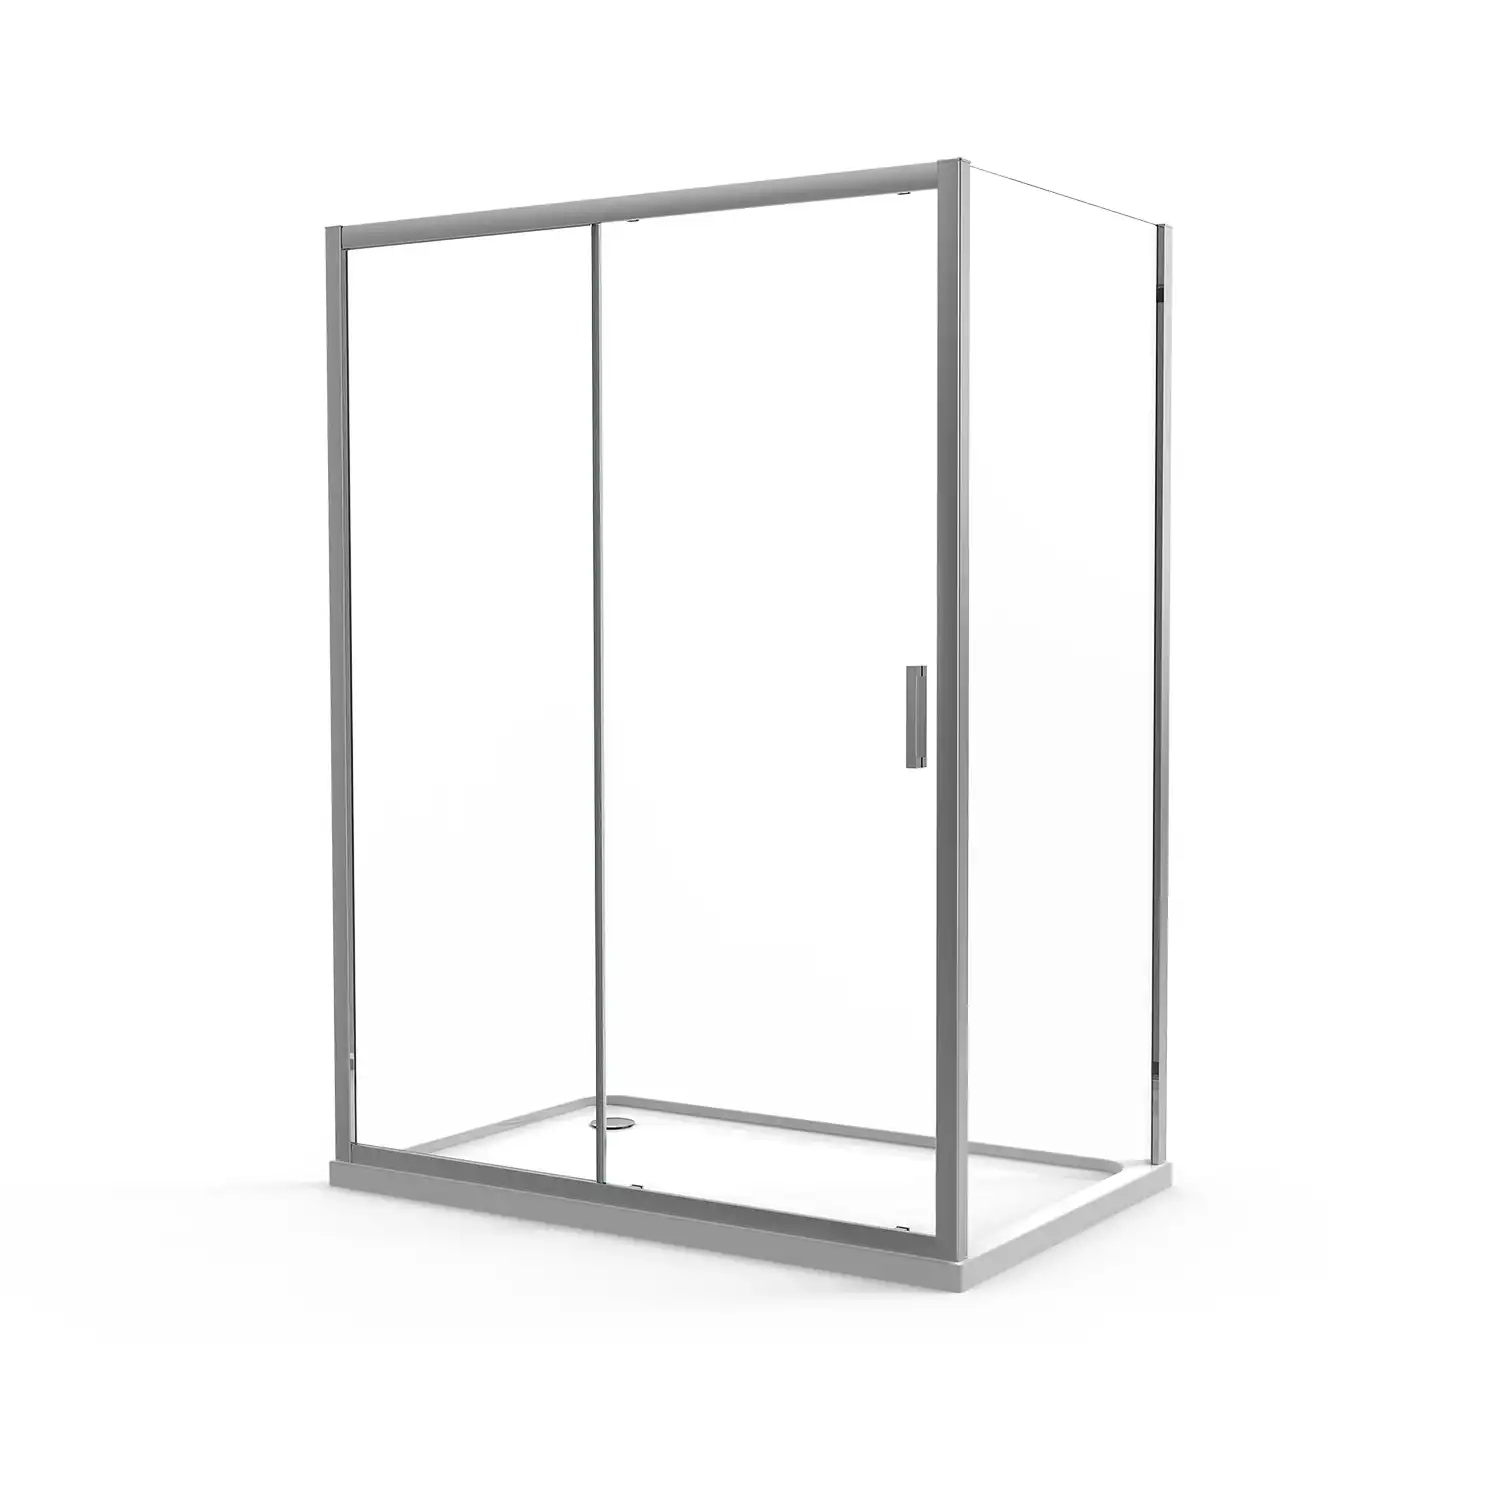 Box doccia angolare 80x120 cm in cristallo trasparente, con apertura 1 anta scorrevole e parete fissa | Vinagra